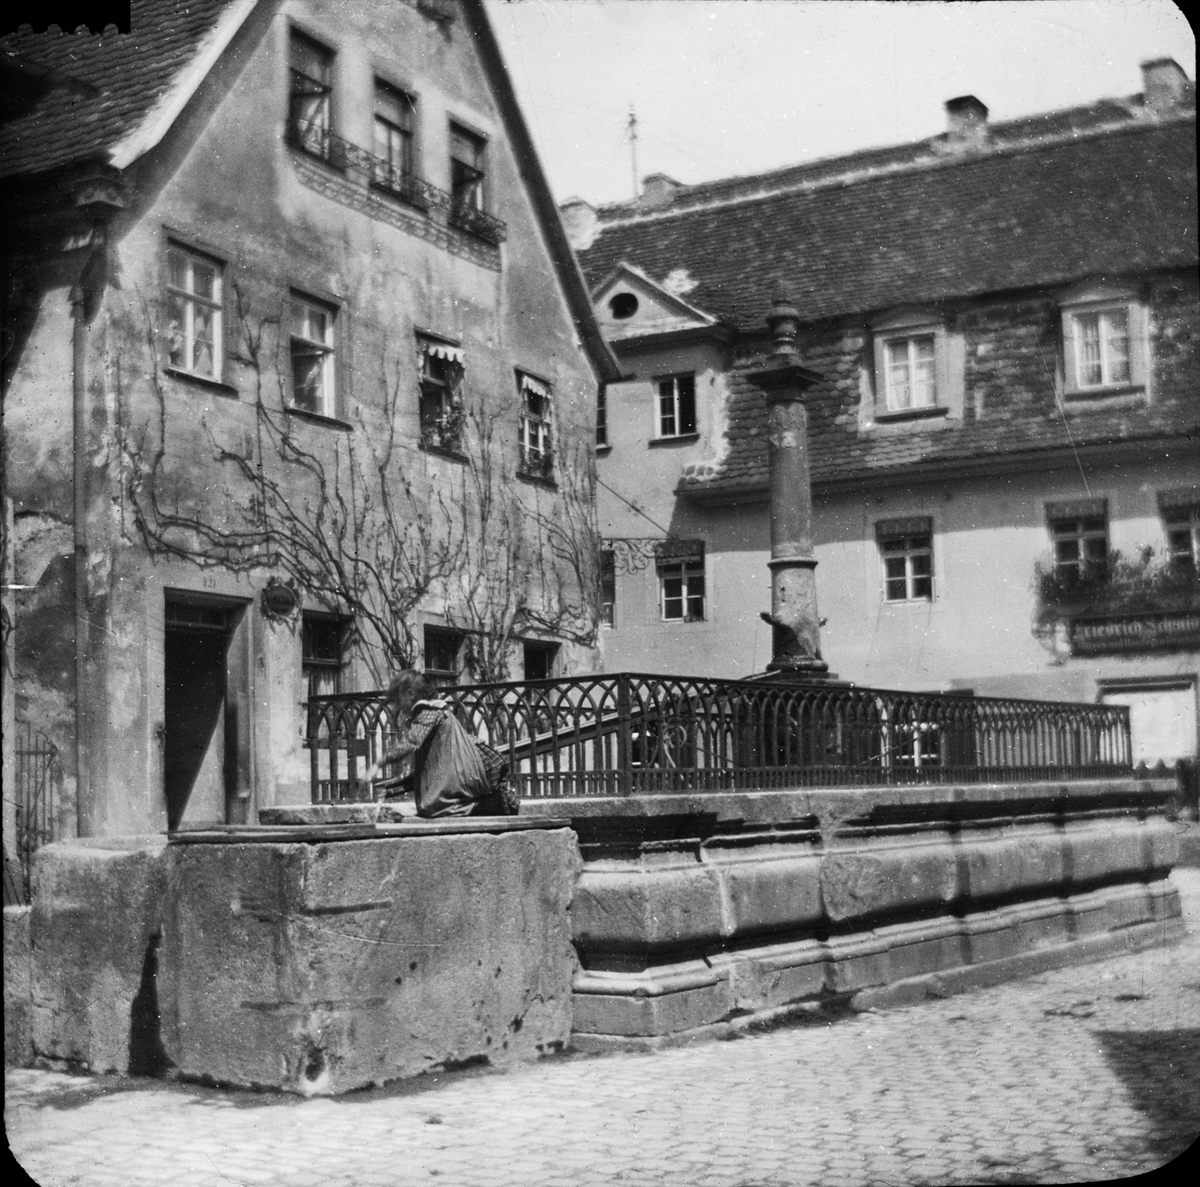 Skioptikonbild med motiv från Rothenburg.
Bilden har förvarats i kartong märkt: Rothenburg I. 1901.